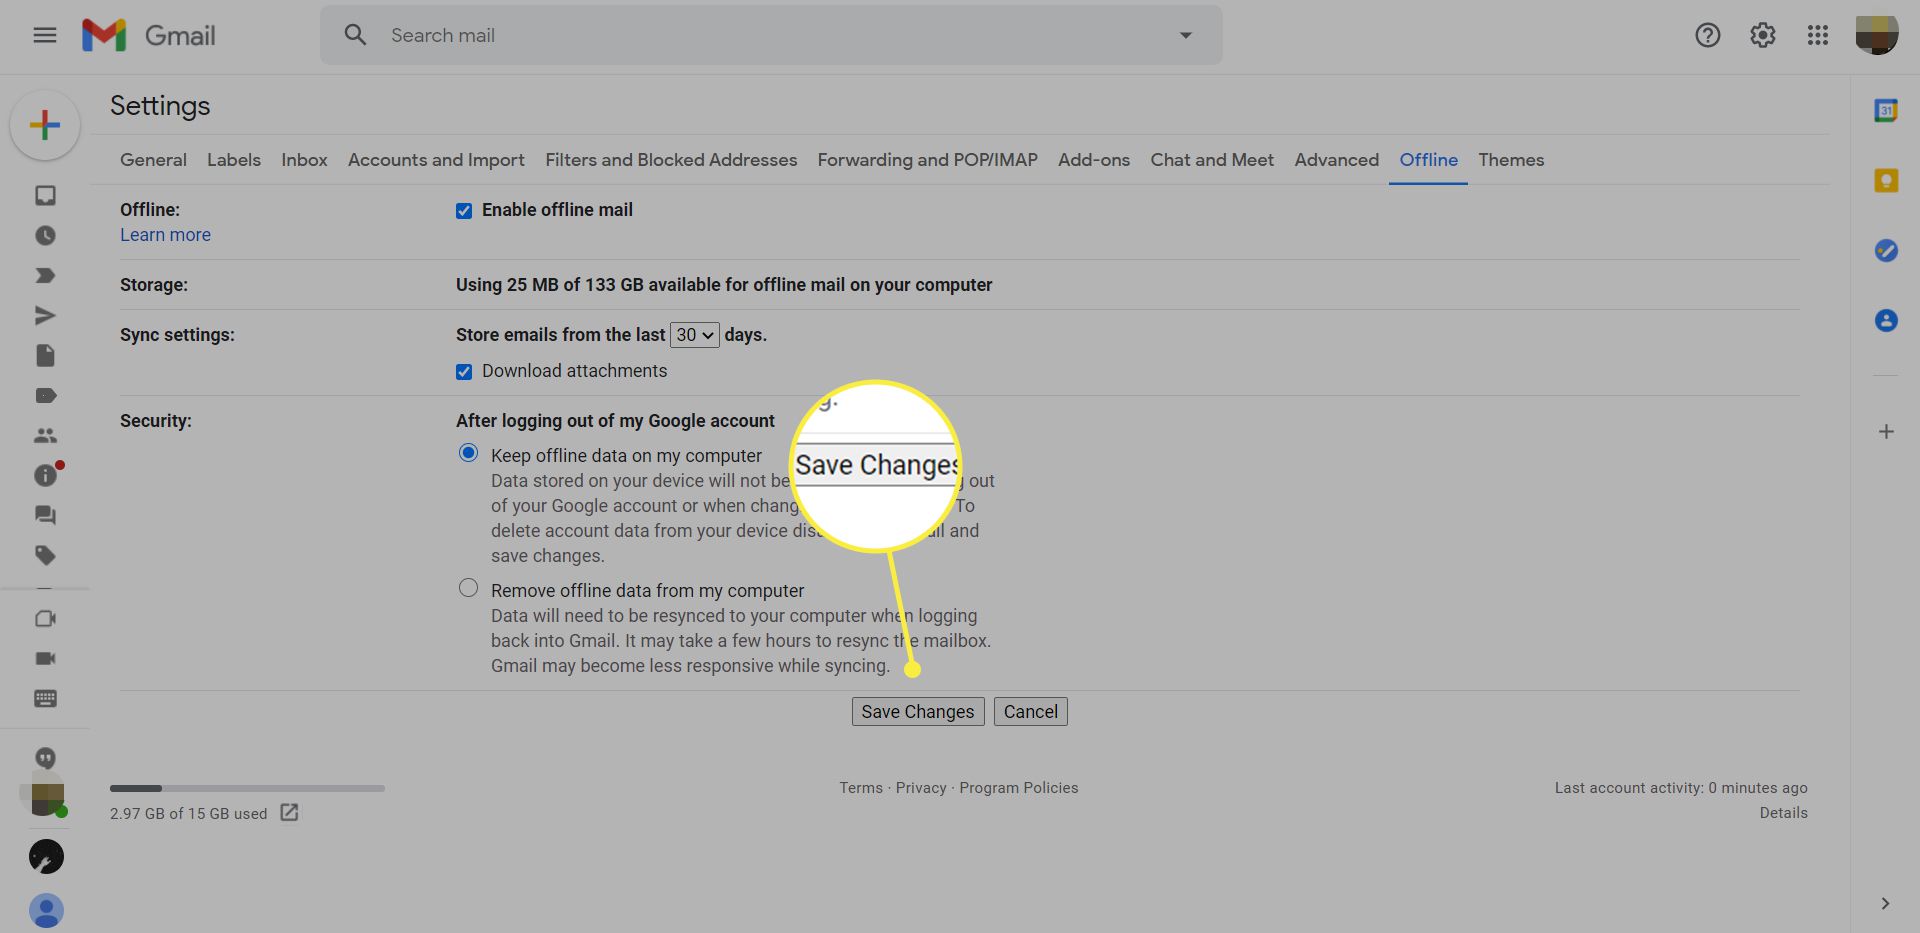 Налаштування електронної пошти Gmail у режимі офлайн із виділеною кнопкою Зберегти зміни